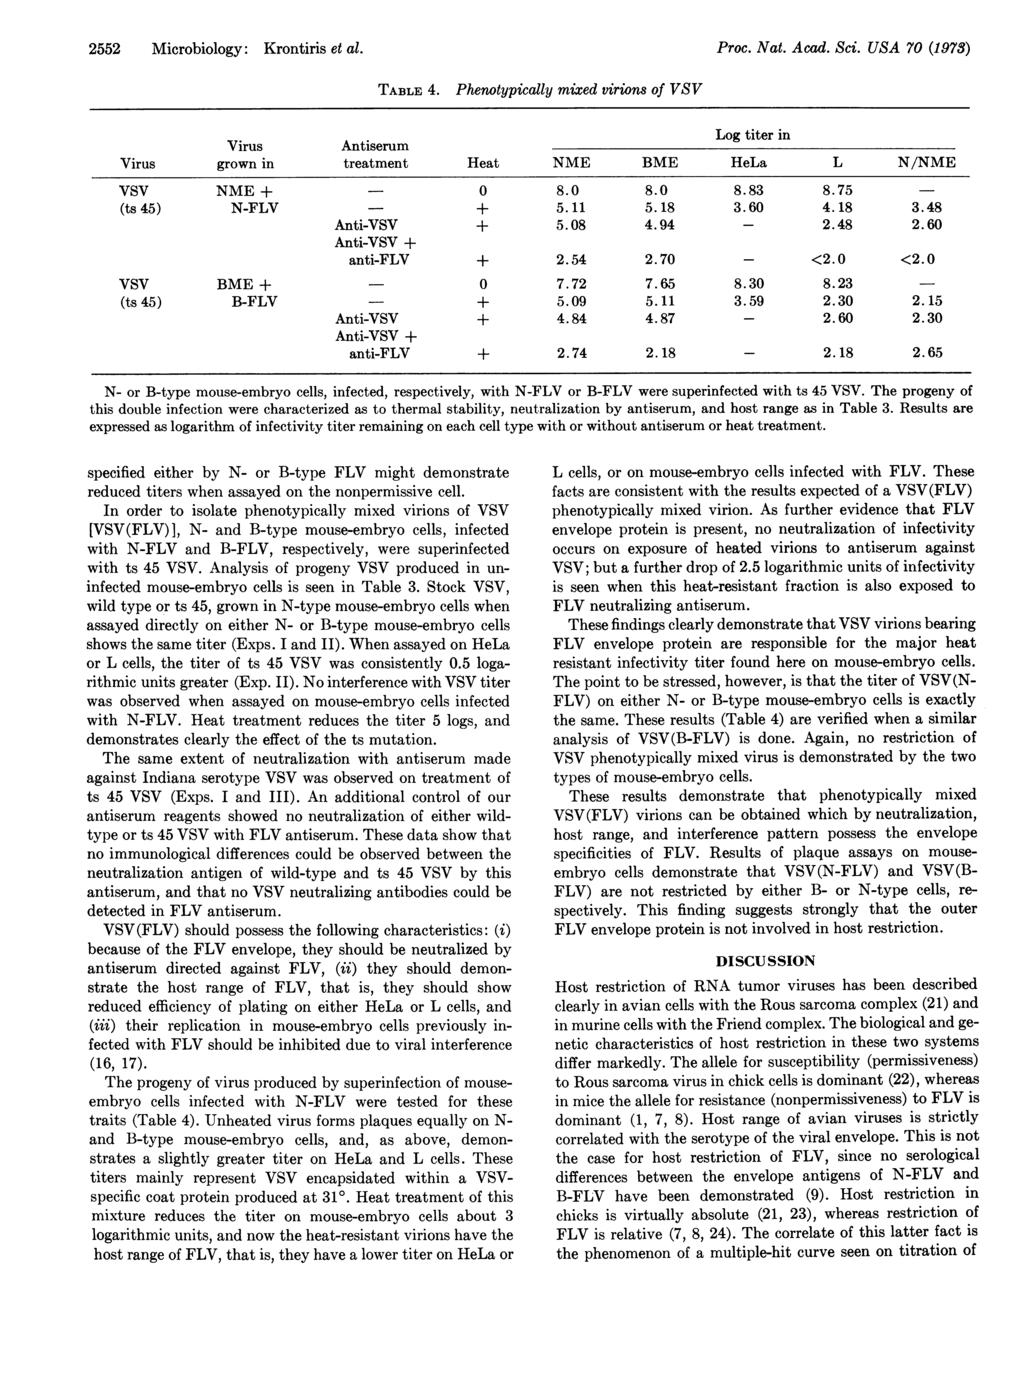 2552 Microbiology: Krontiris et al. Proc. Nat. Acad. Sci. USA 70 (1973) TABLE 4.